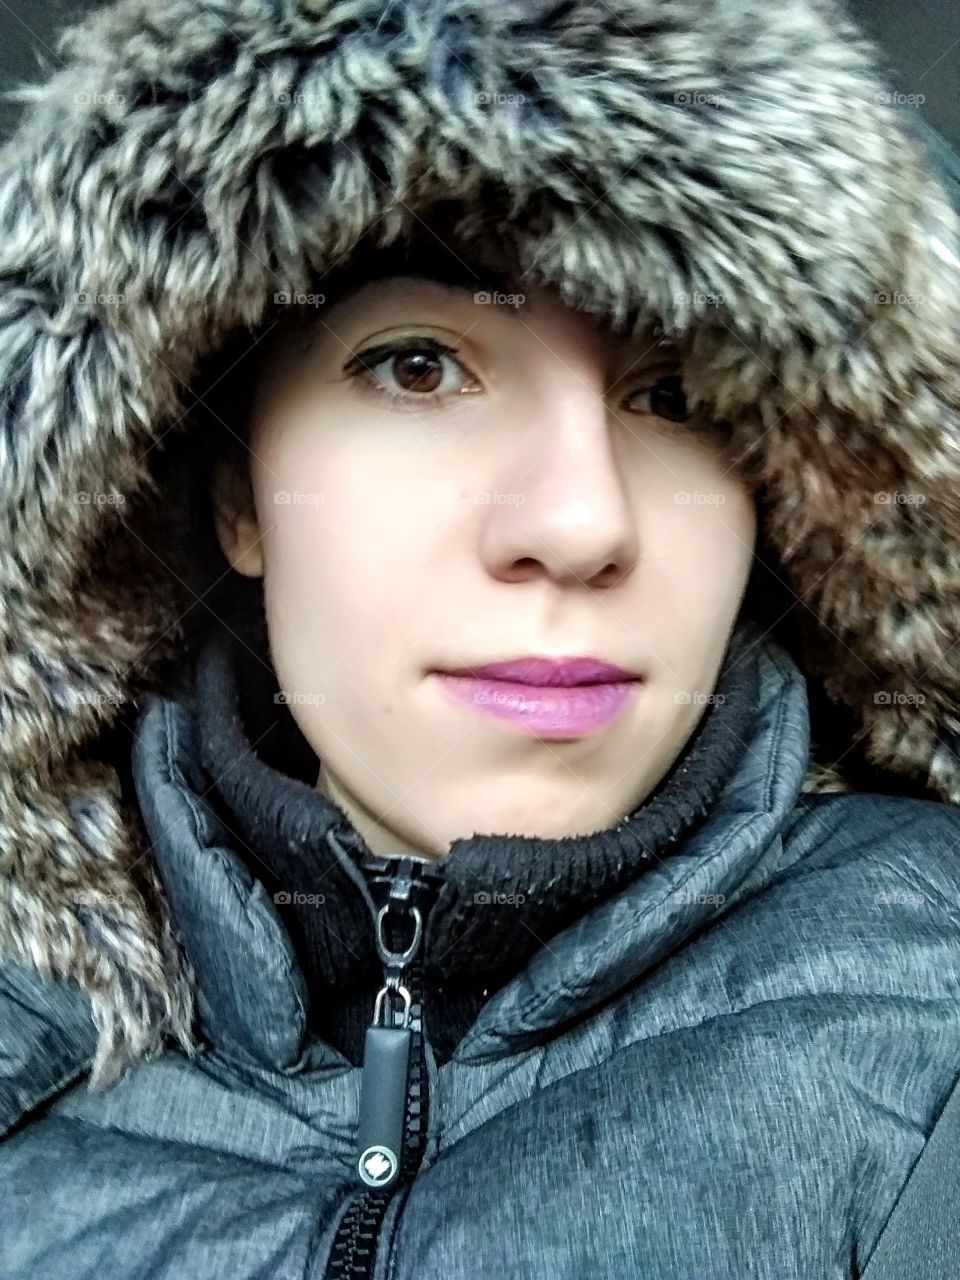 cold weather portrait